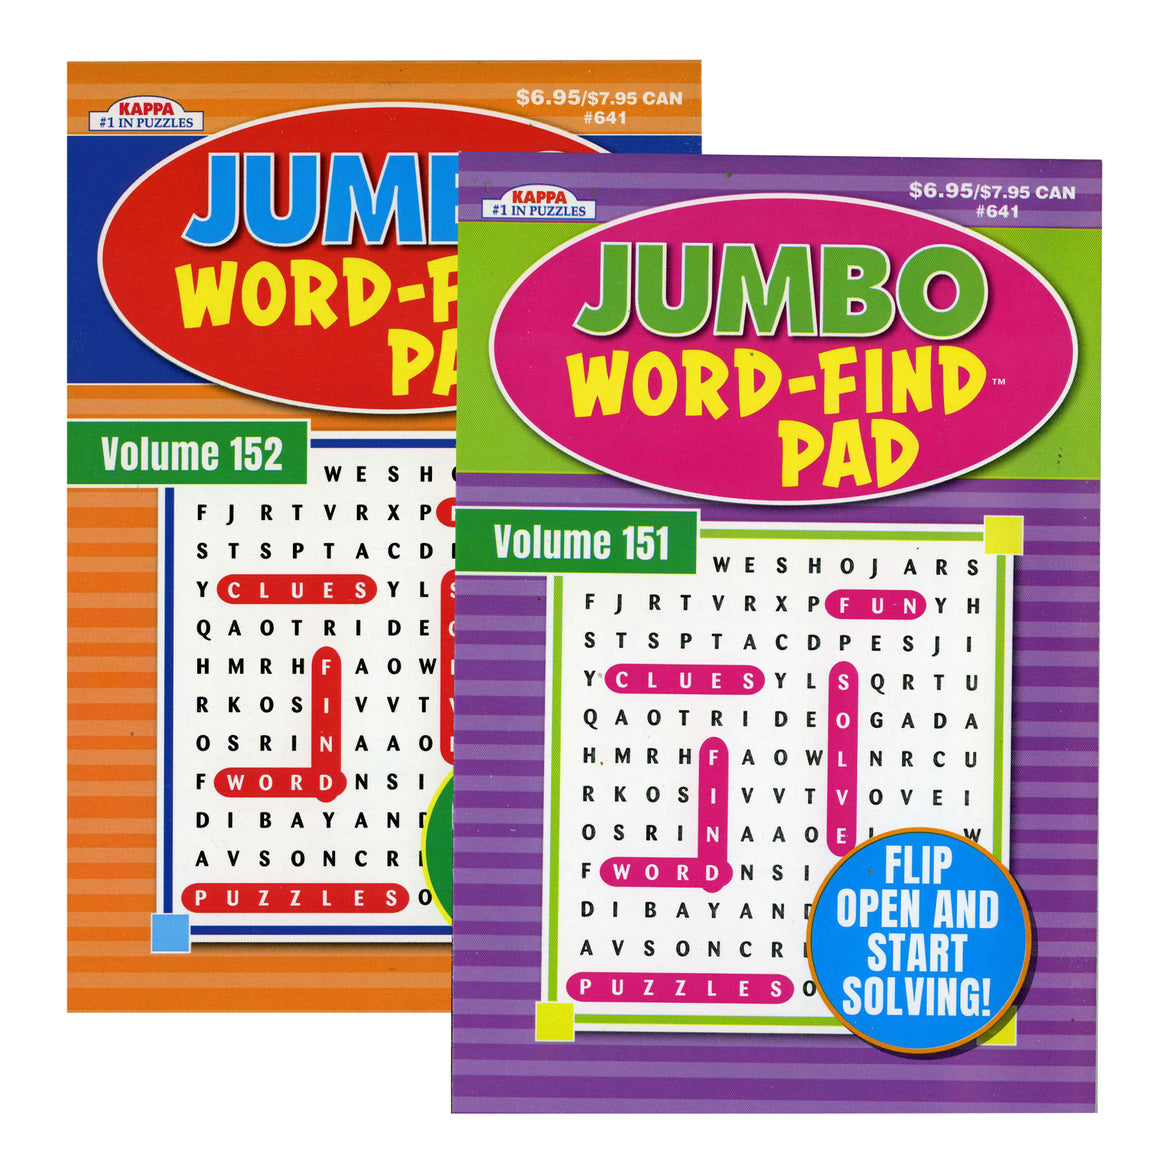 KAPPA Jumbo Word Find Pad - Digest Size